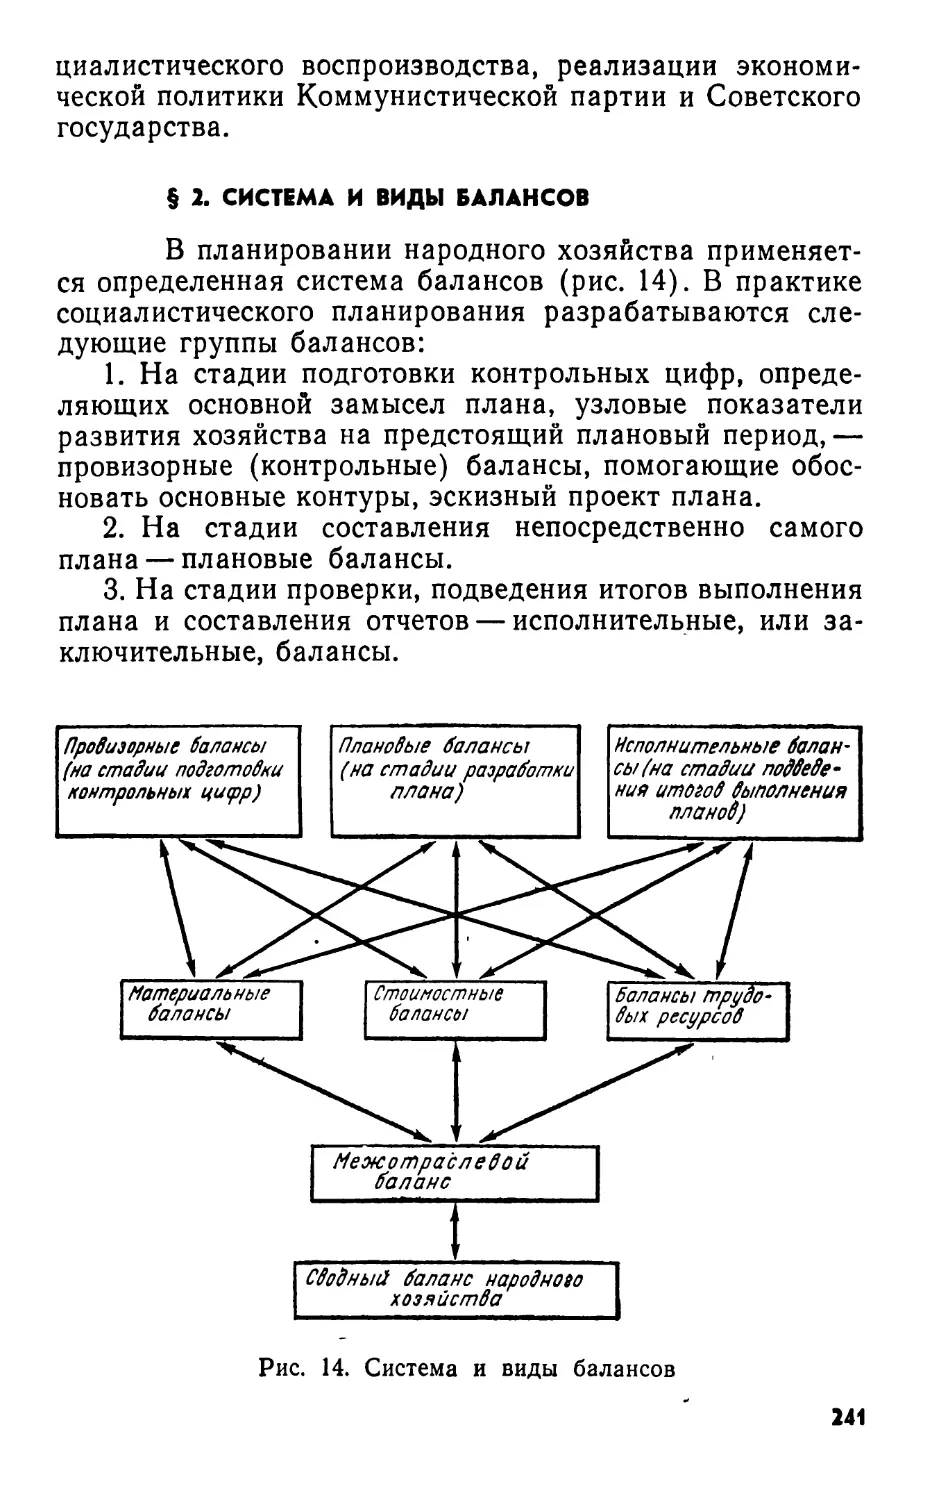 § 2. Система и виды балансов